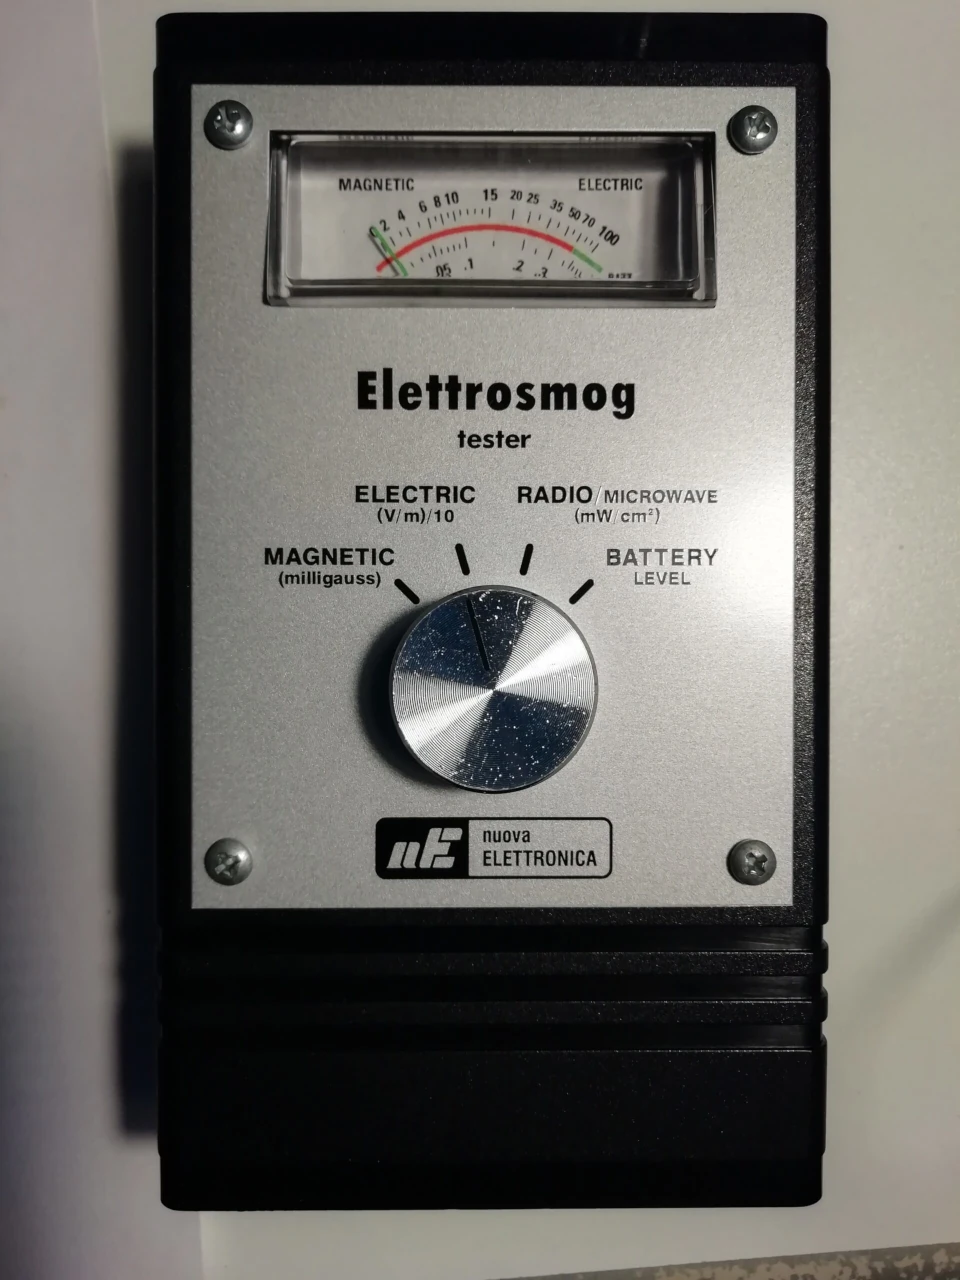 Disturbi elettrici di Open meter - LX1757 - tester elettrosmog nuova elettronica